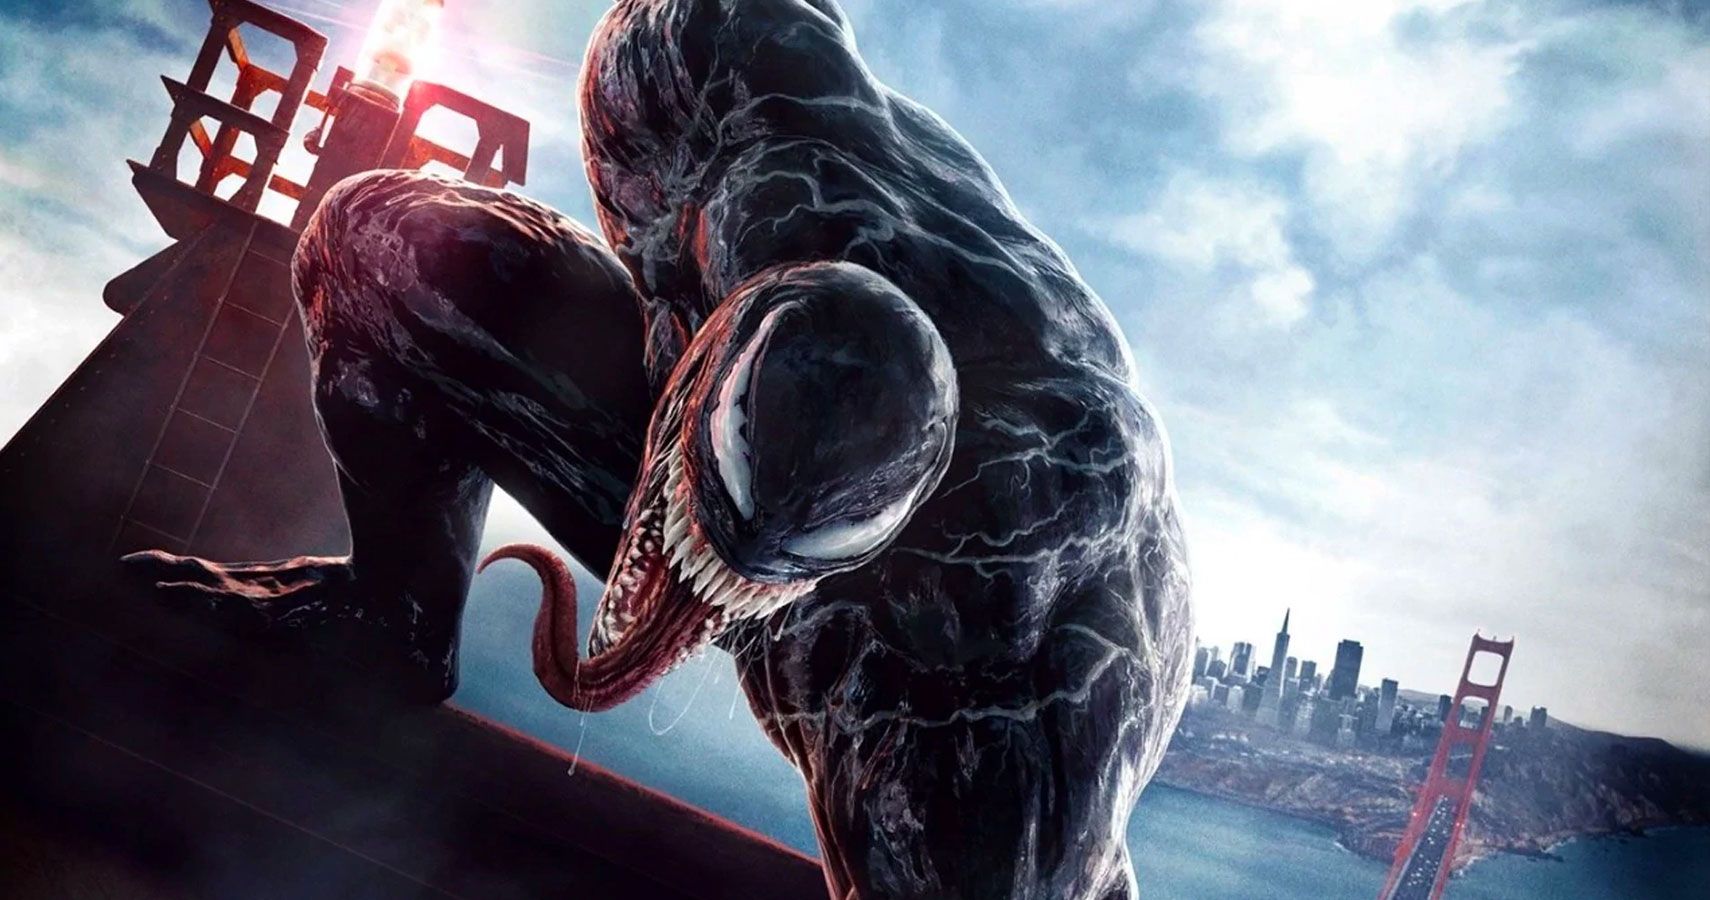 Título oficial de Venom 2 revelado com novo teaser trailer